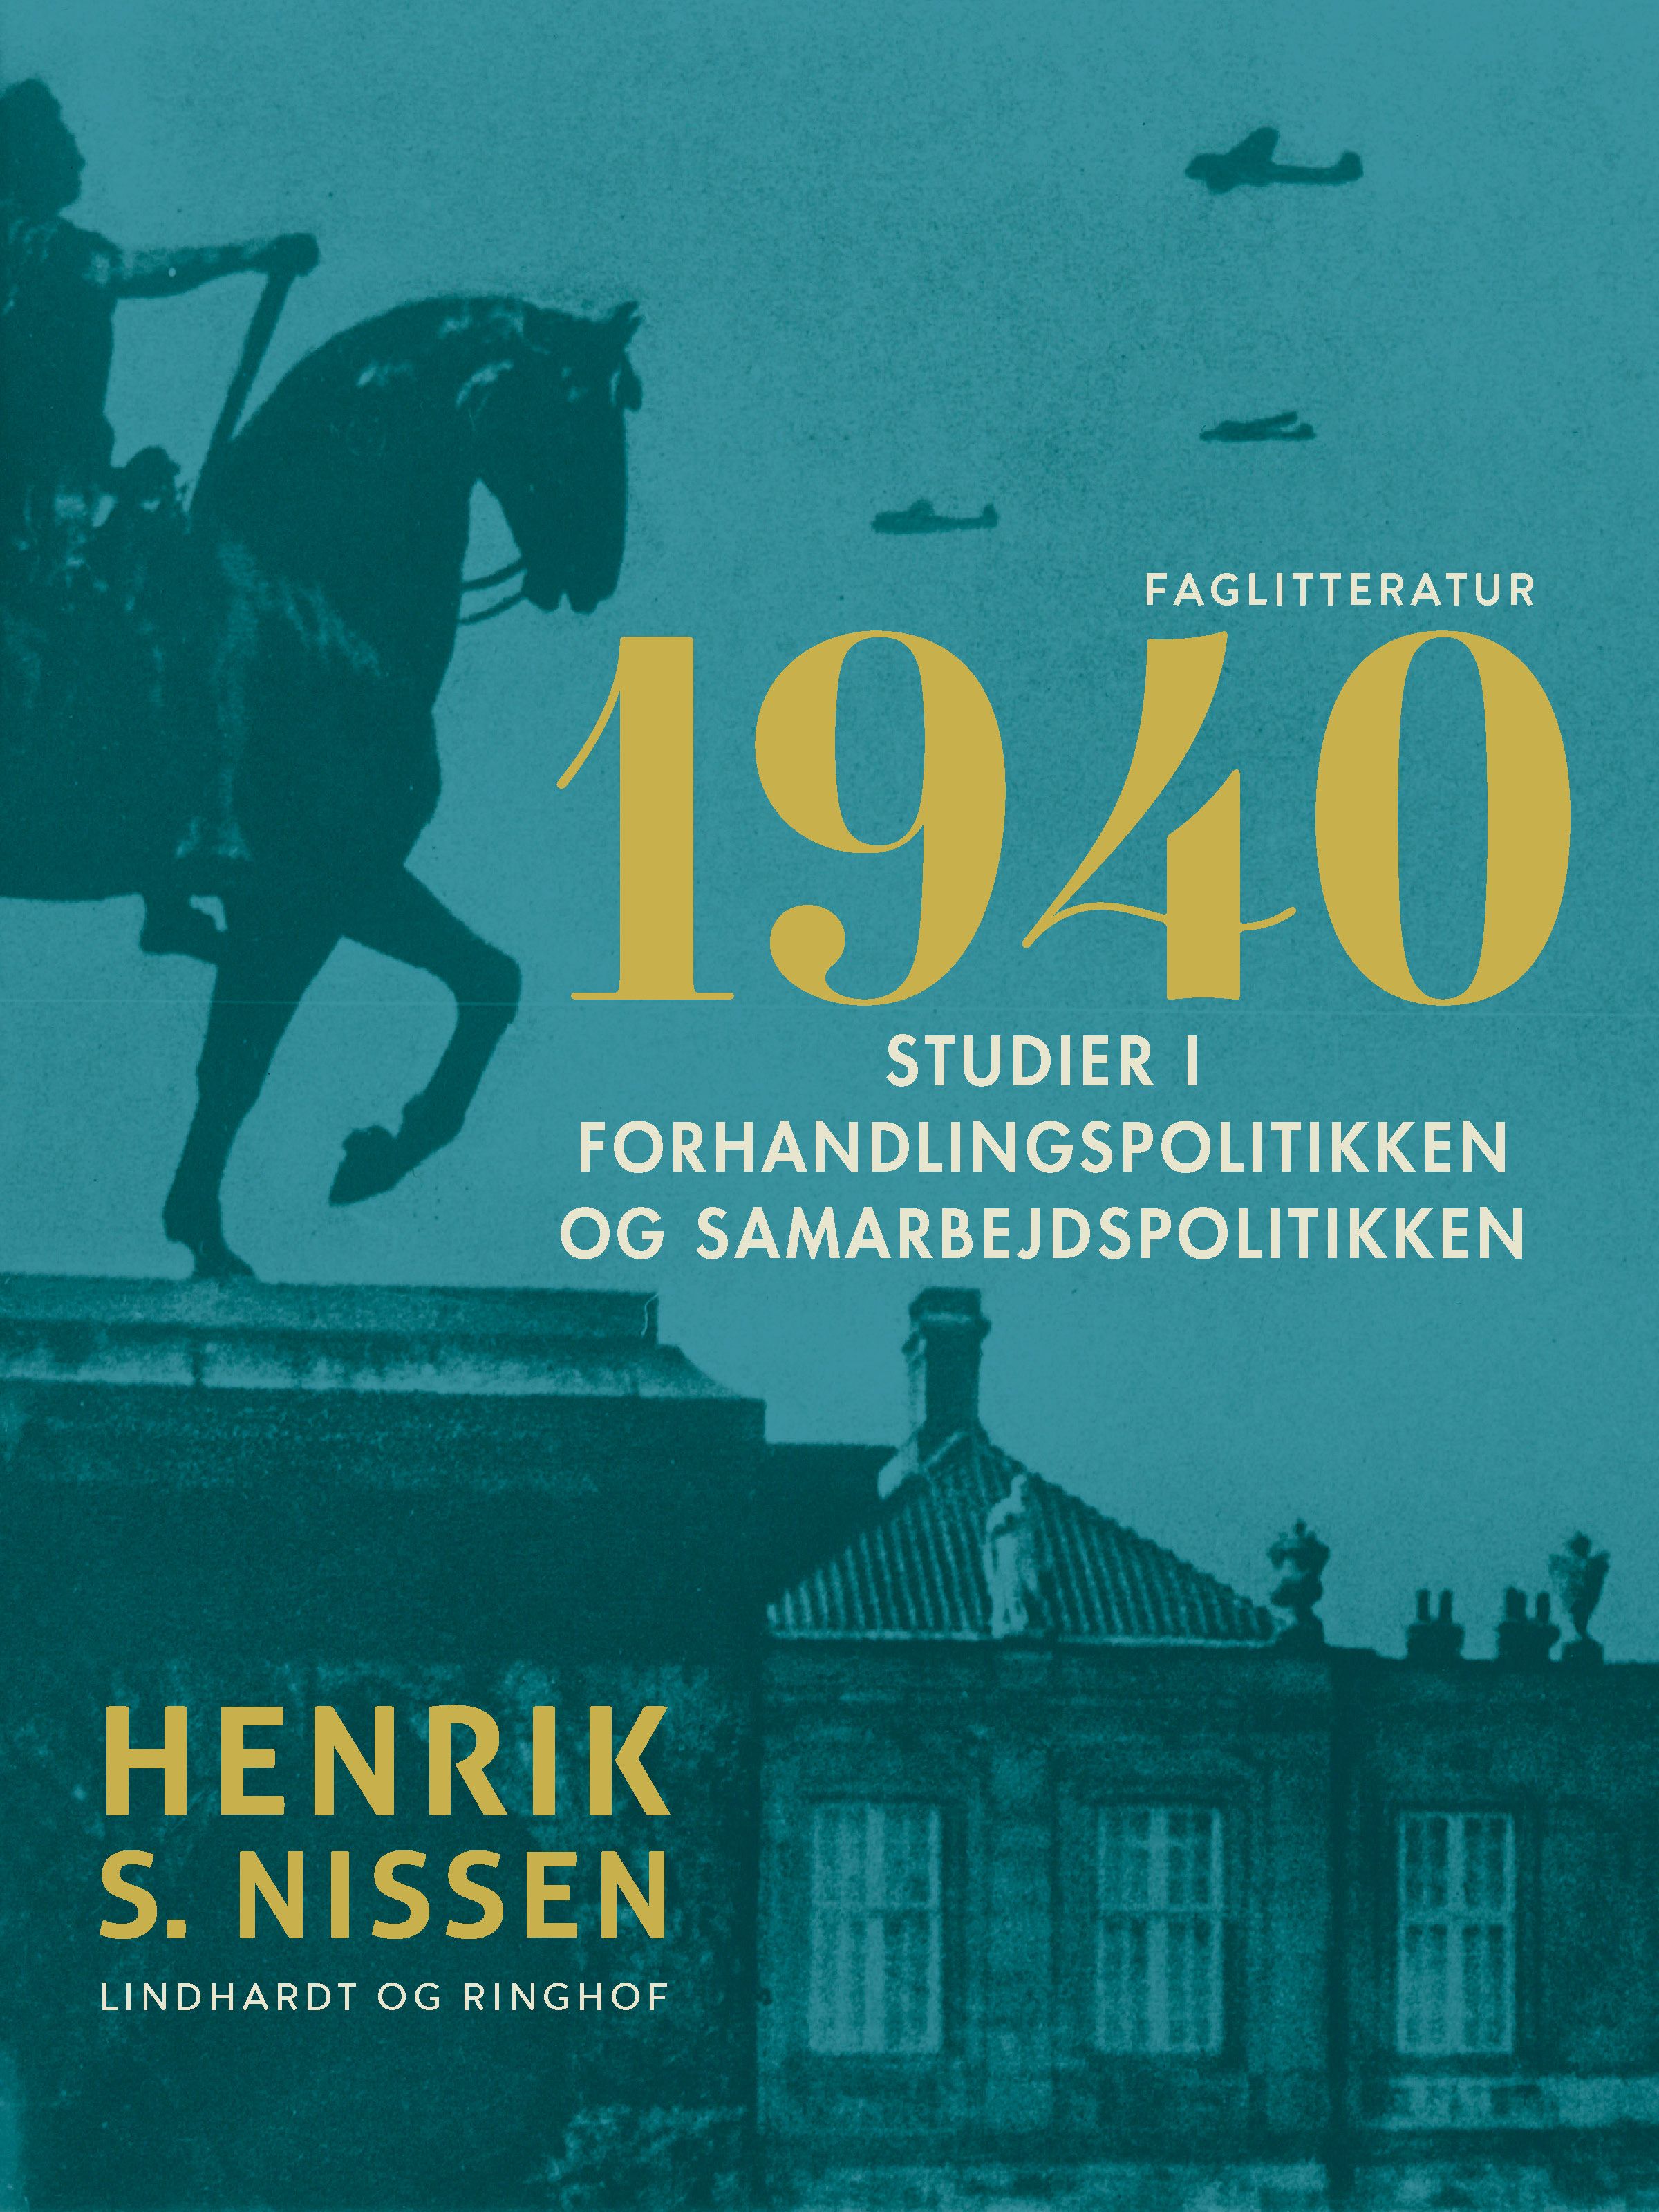 1940. Studier i forhandlingspolitikken og samarbejdspolitikken, eBook by Henrik S. Nissen